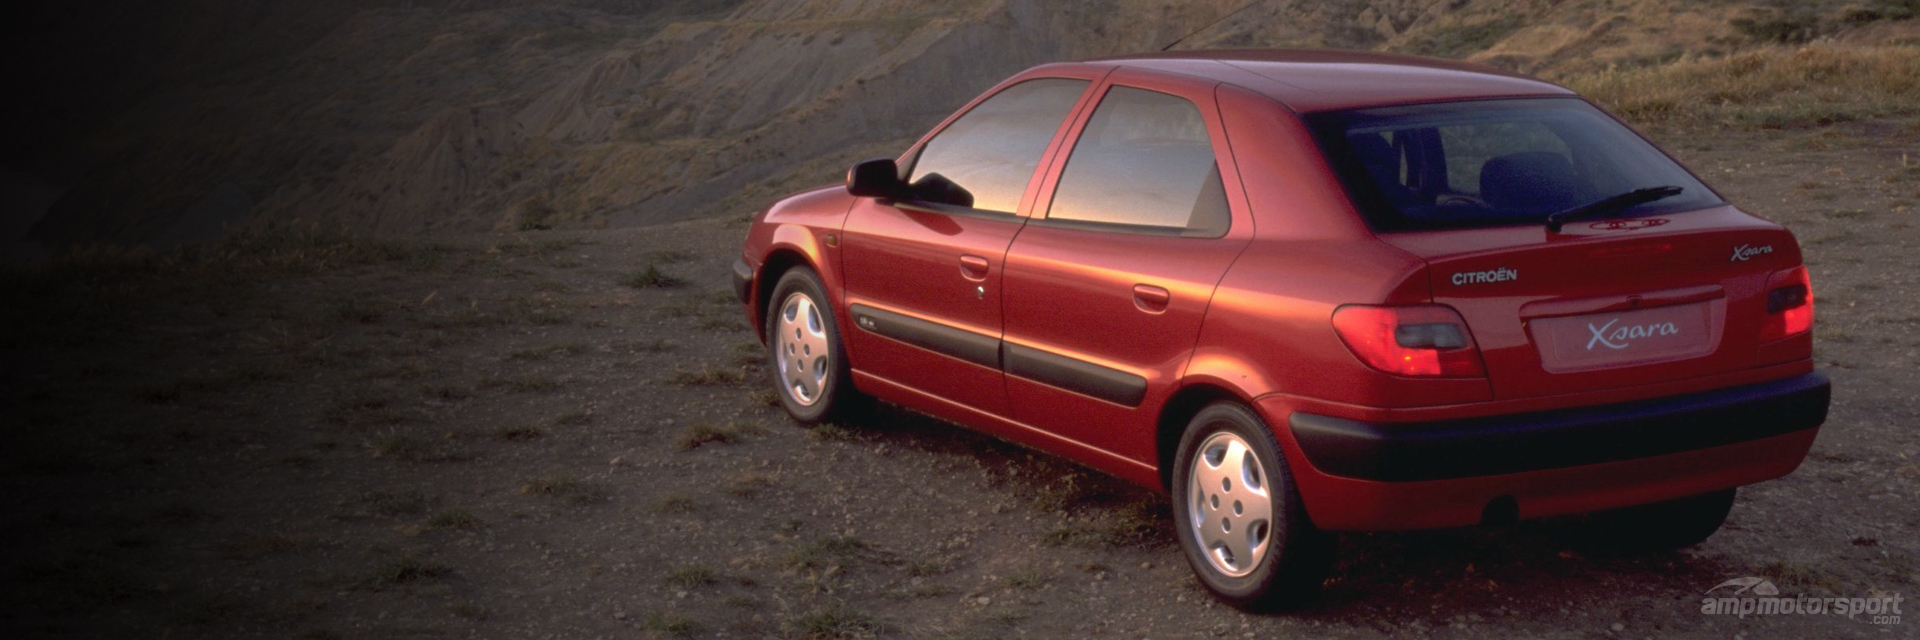 XSARA 1997-2000